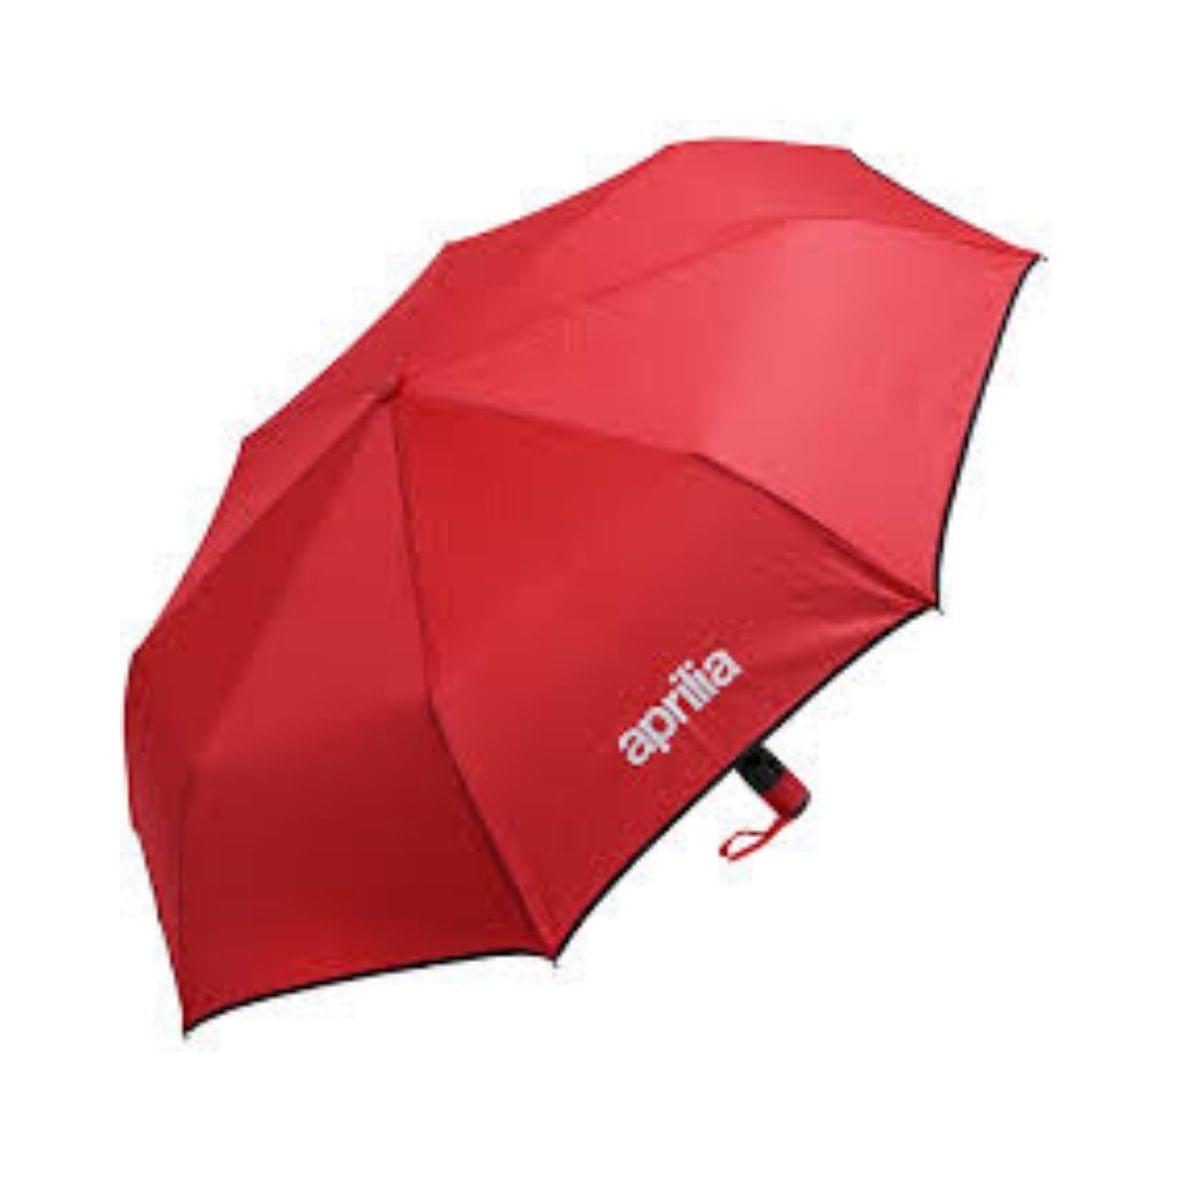 Aprilia Umbrella